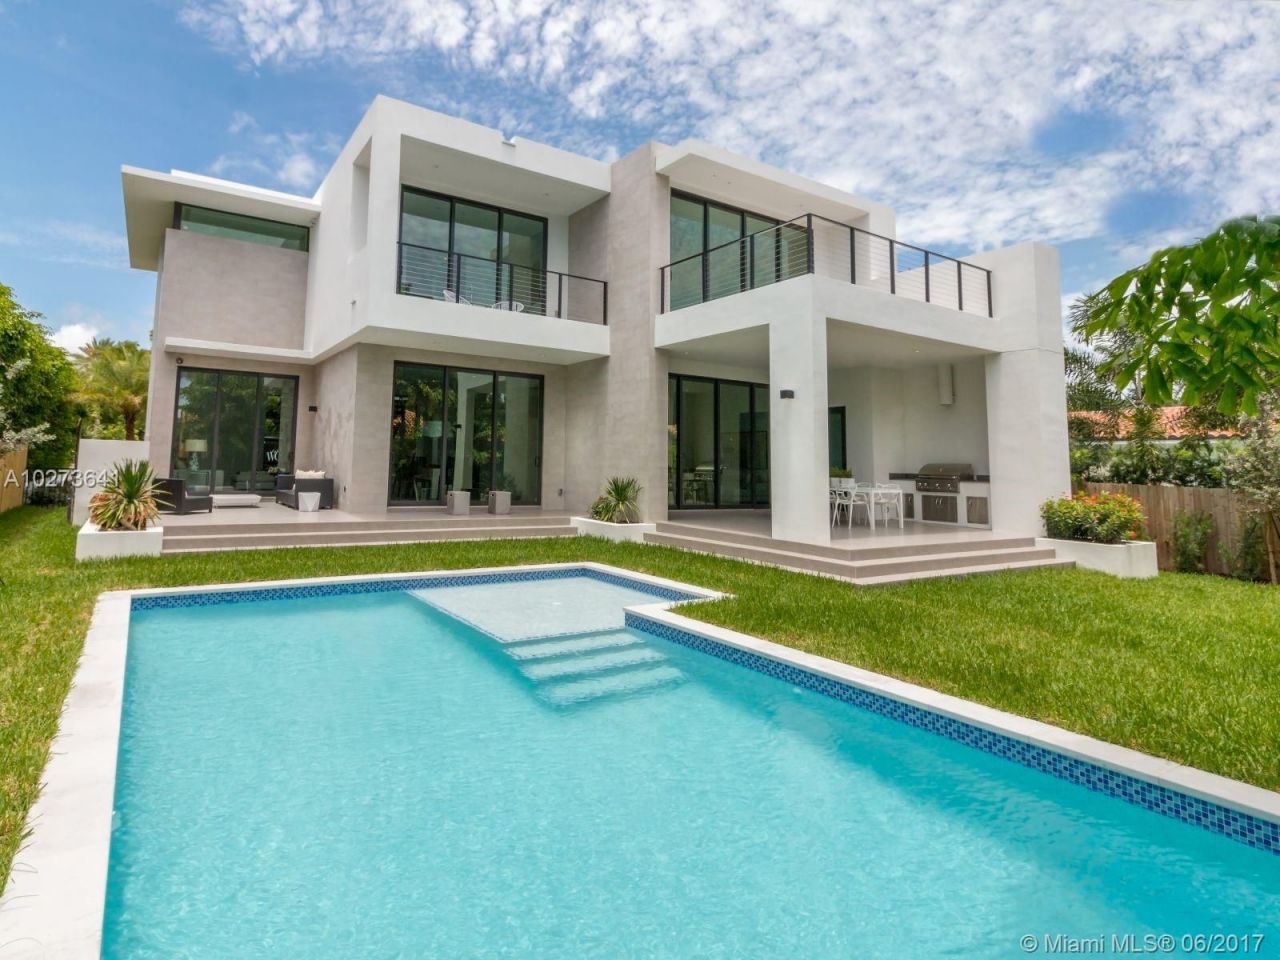 House in Miami, USA, 400 sq.m - picture 1